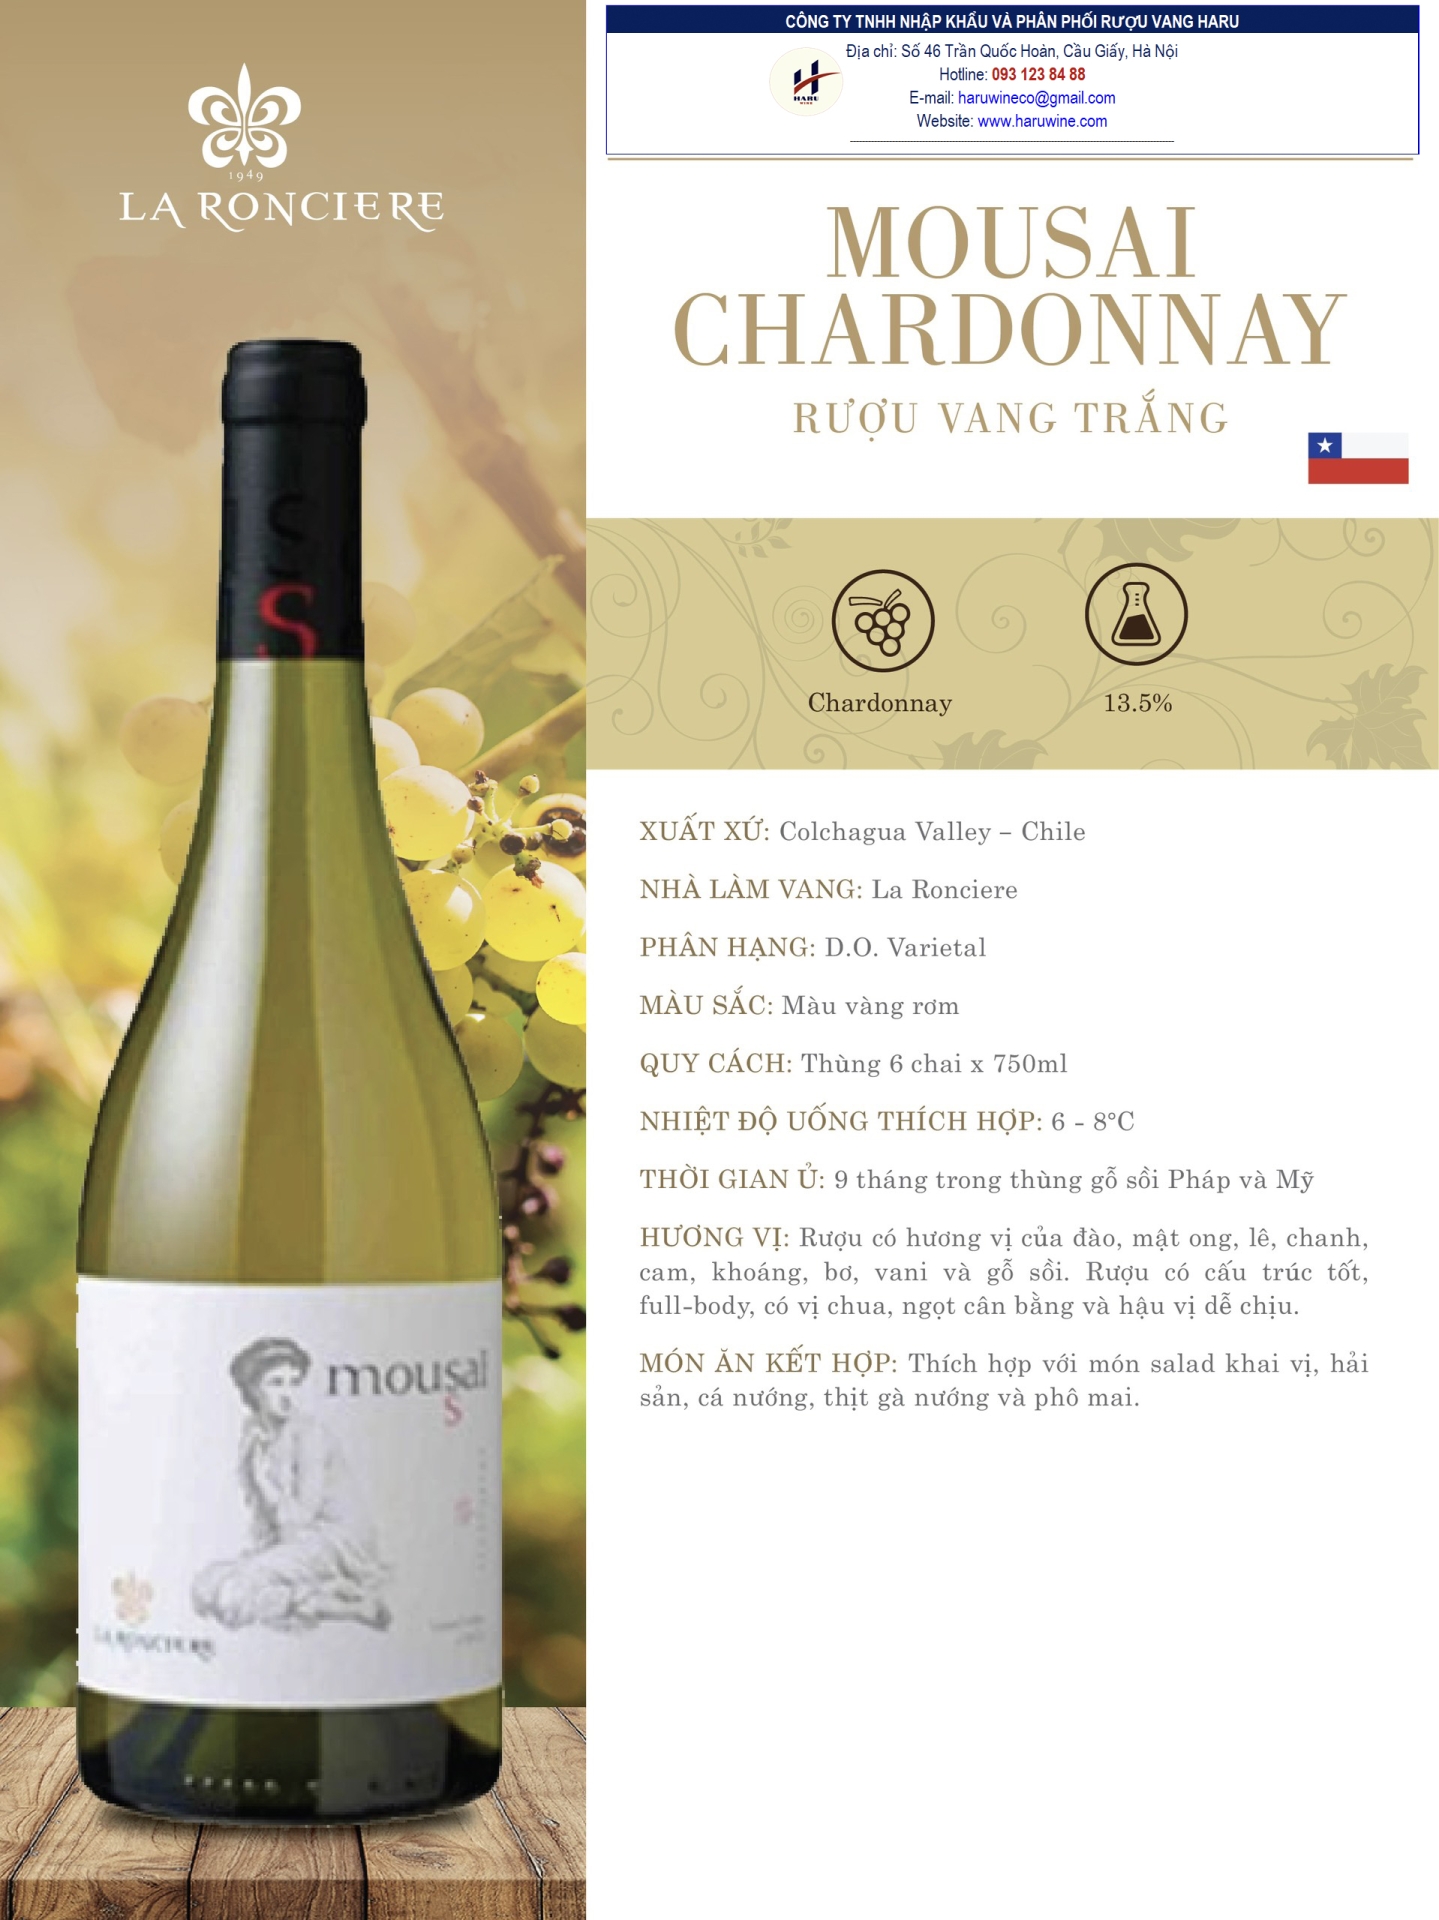 Rượu vang trắng Mousai chardonnay